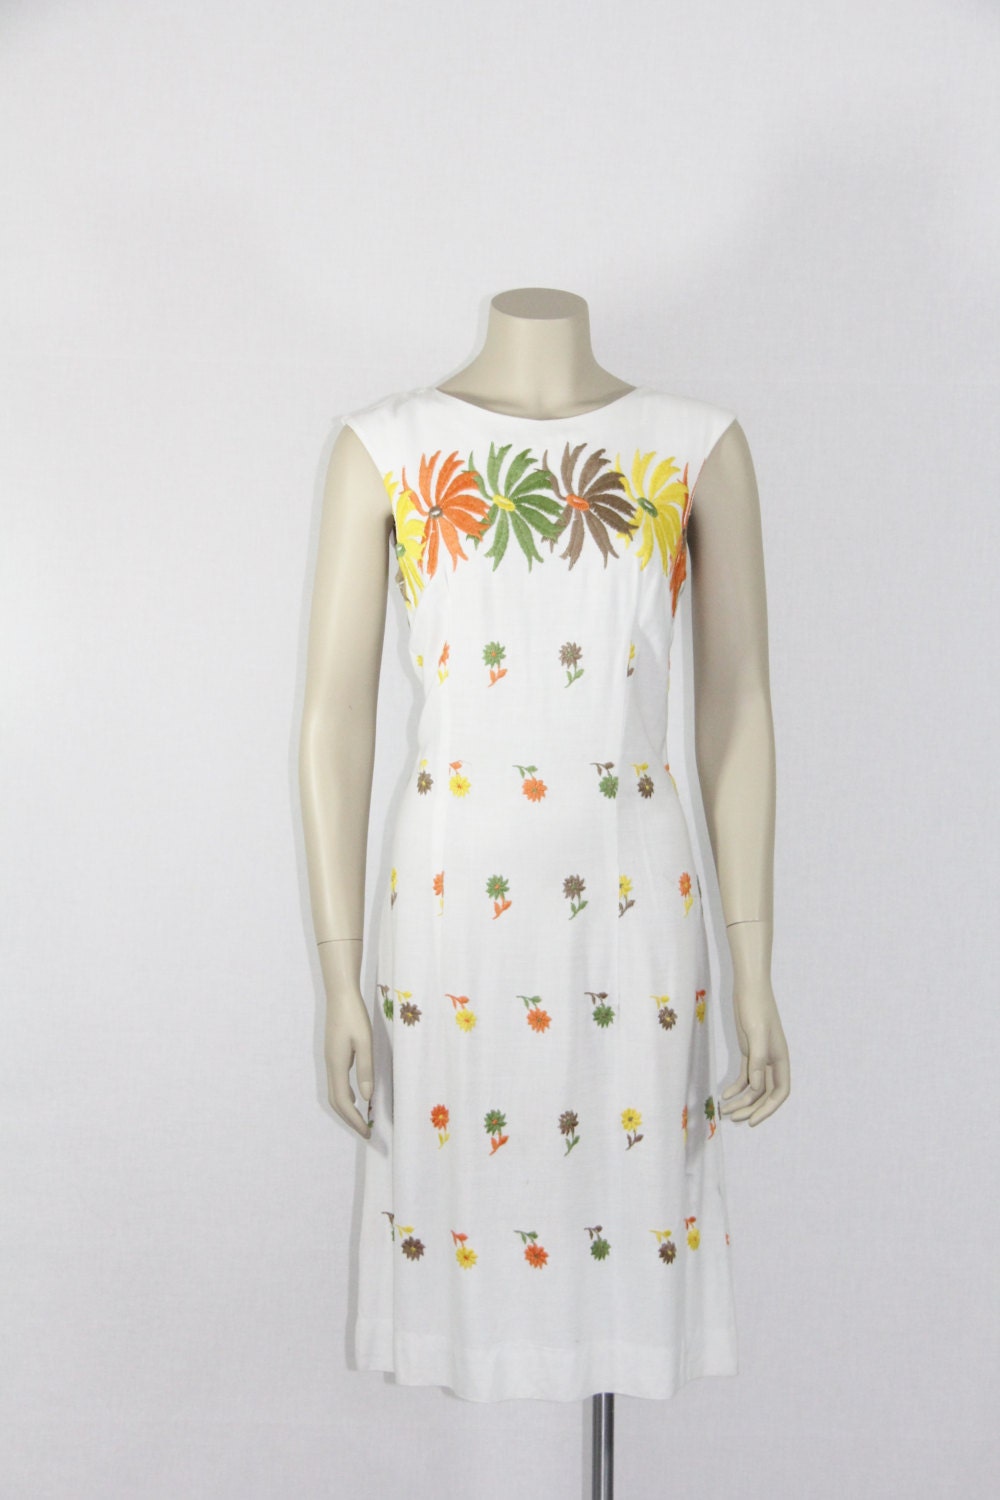 1960's Mod Dress Vintage Floral by VintageFrocksOfFancy on Etsy